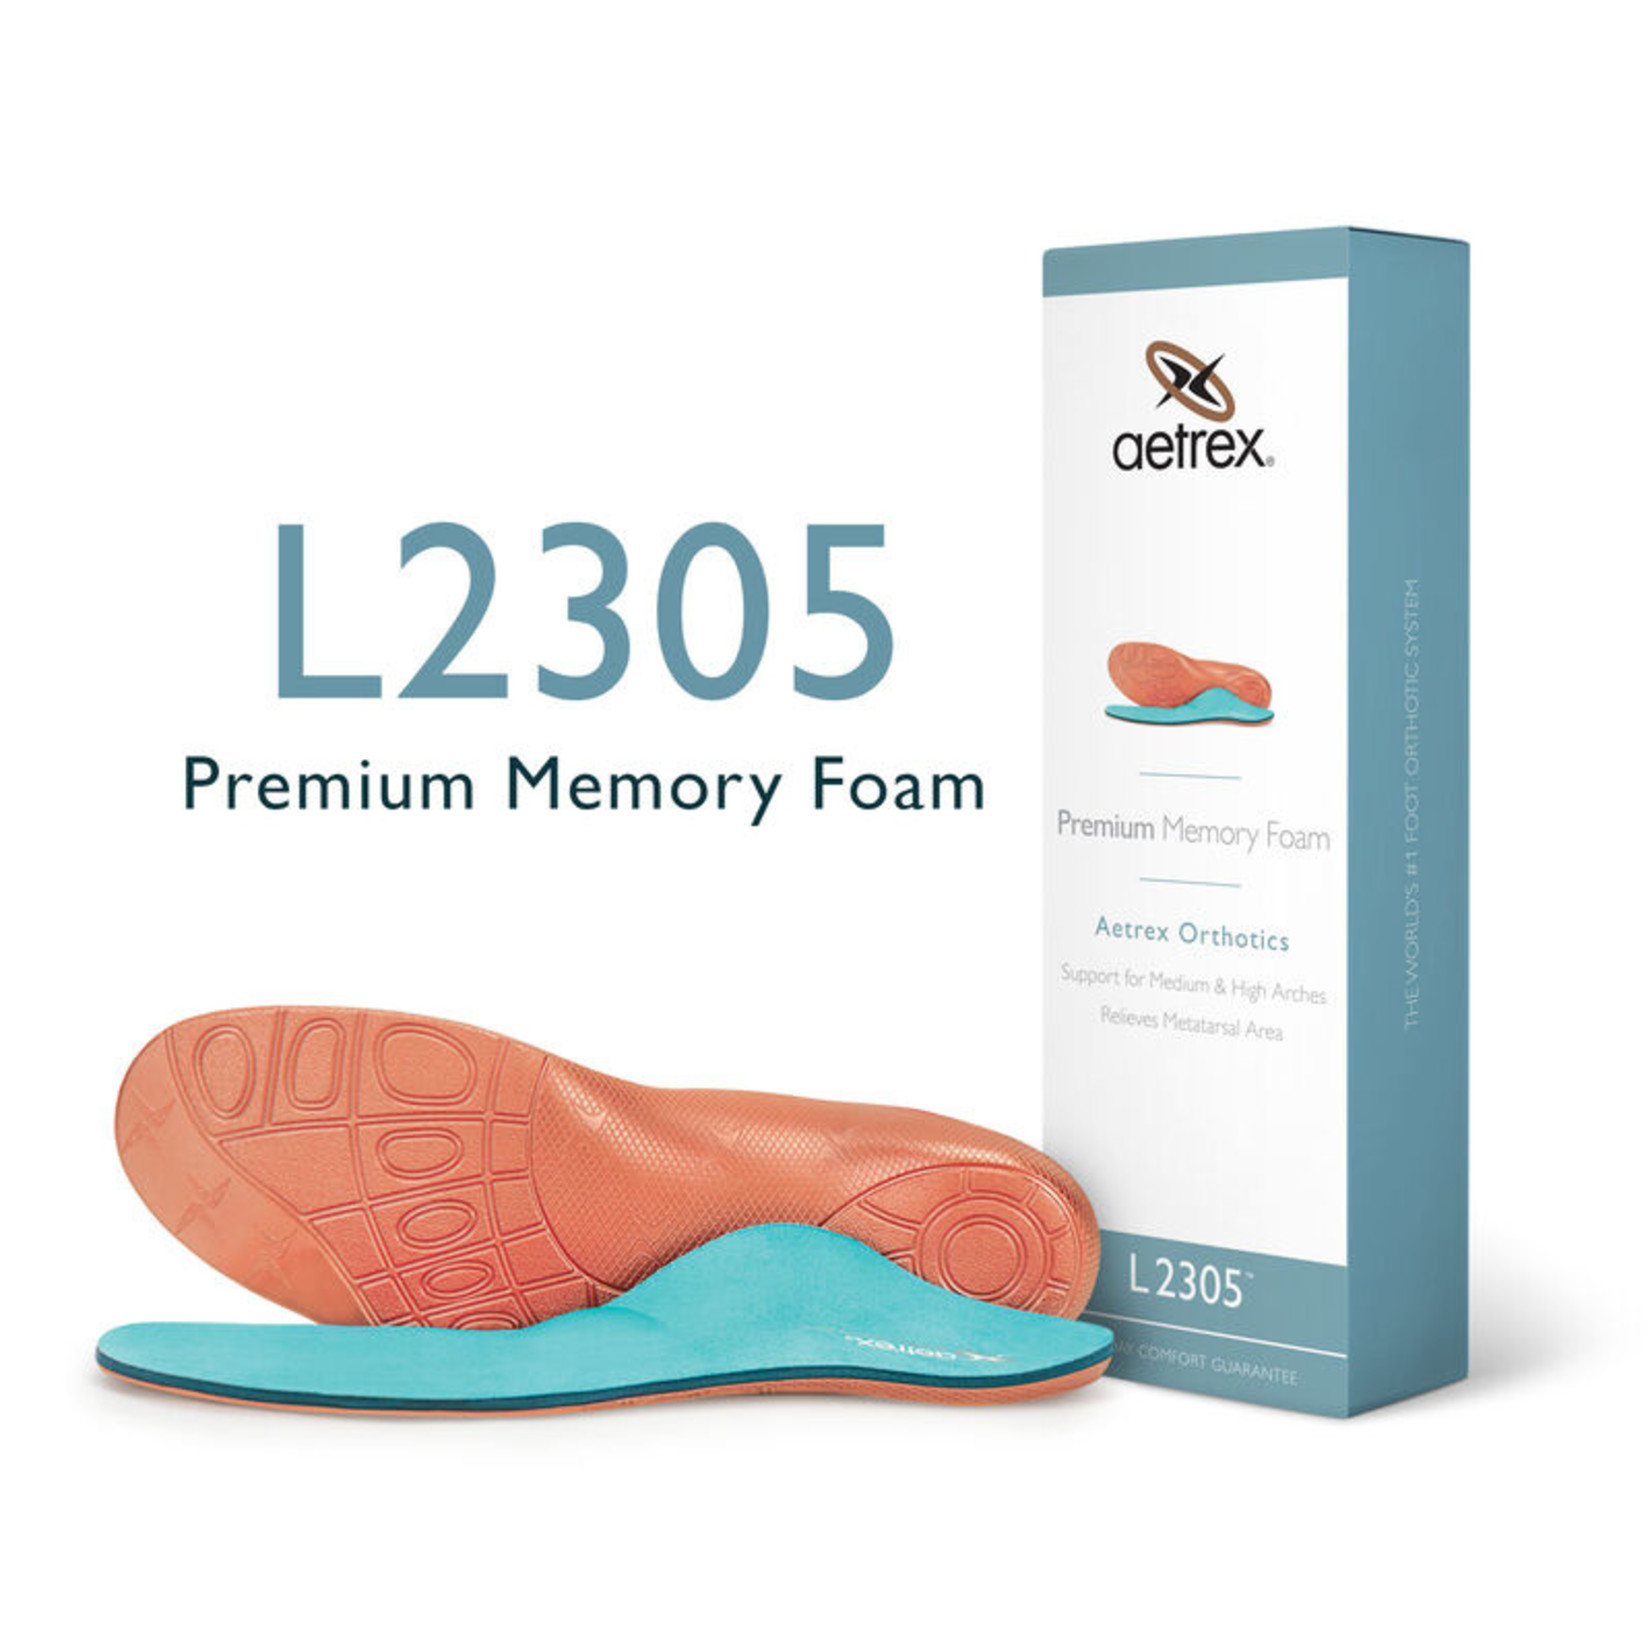 Aetrex Men's Premium Memory Foam Orthotics W/ Metatarsal Support